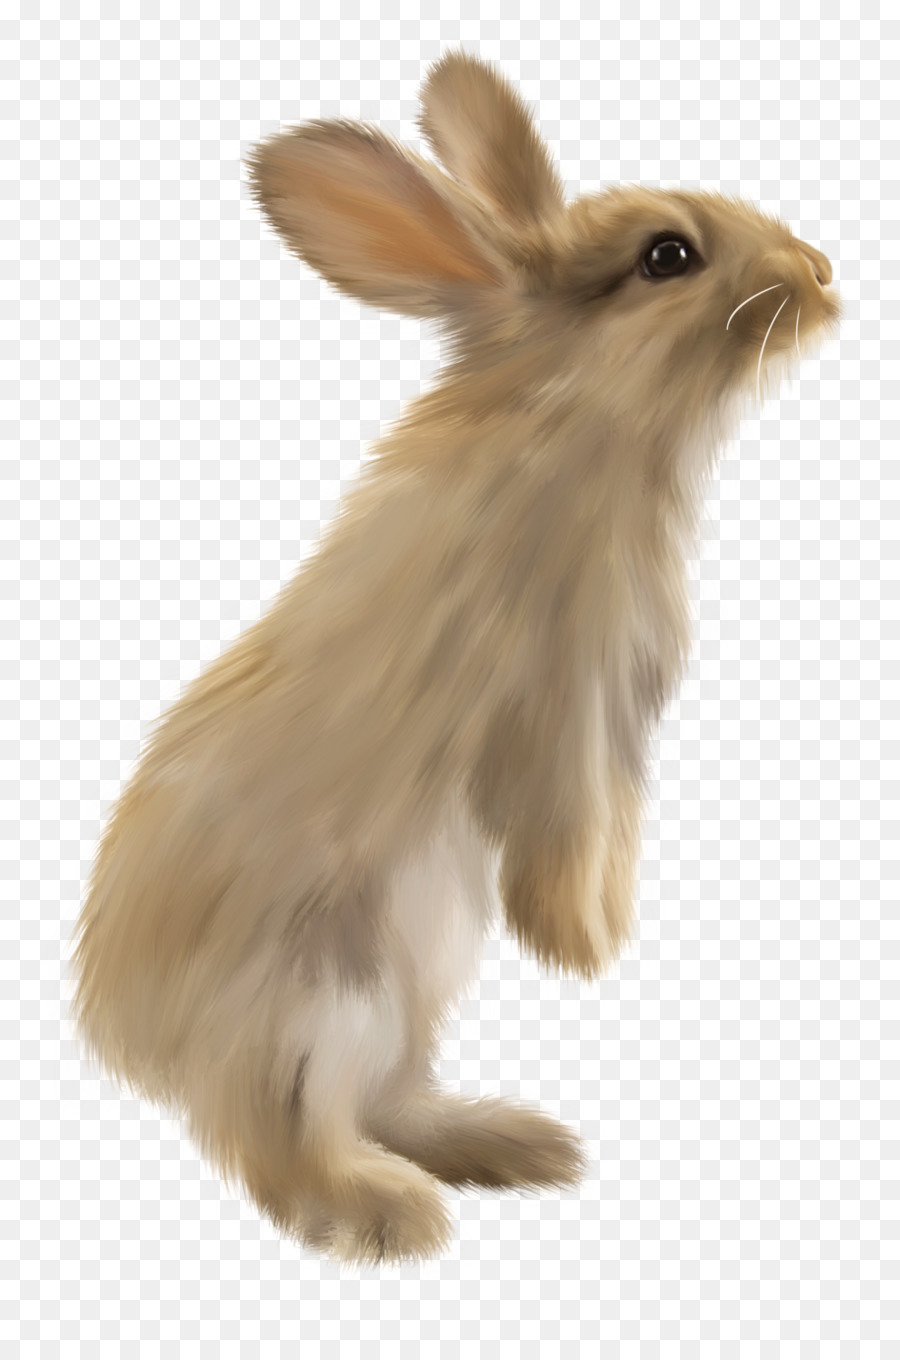 Coniglio Lepre Lionhead coniglio Vulcano coniglio - coniglio